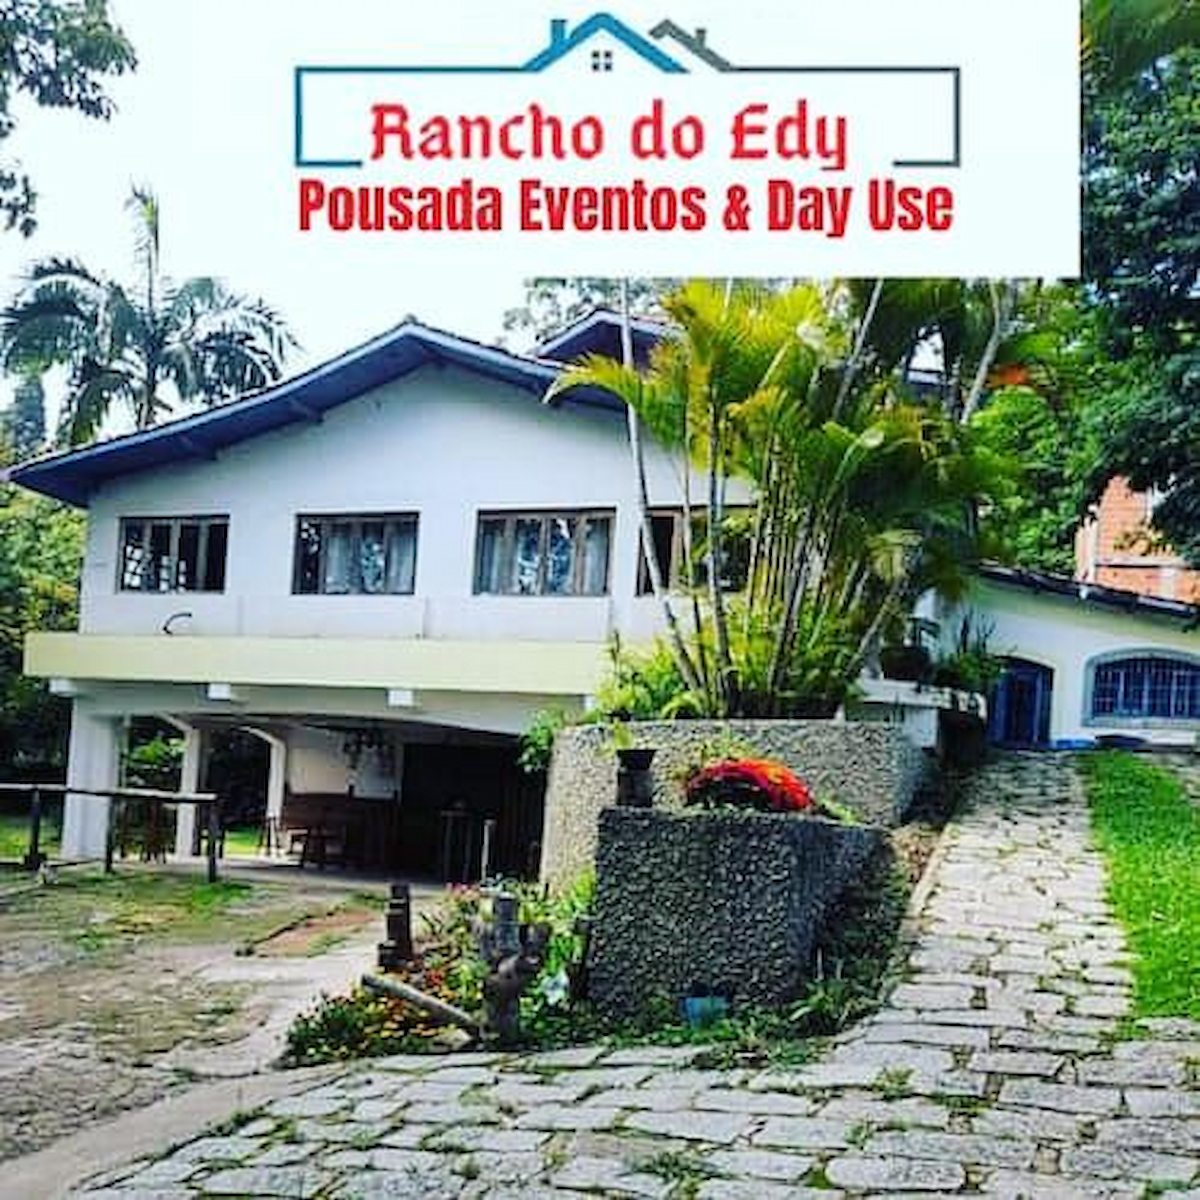 Rancho do Edy Pousada